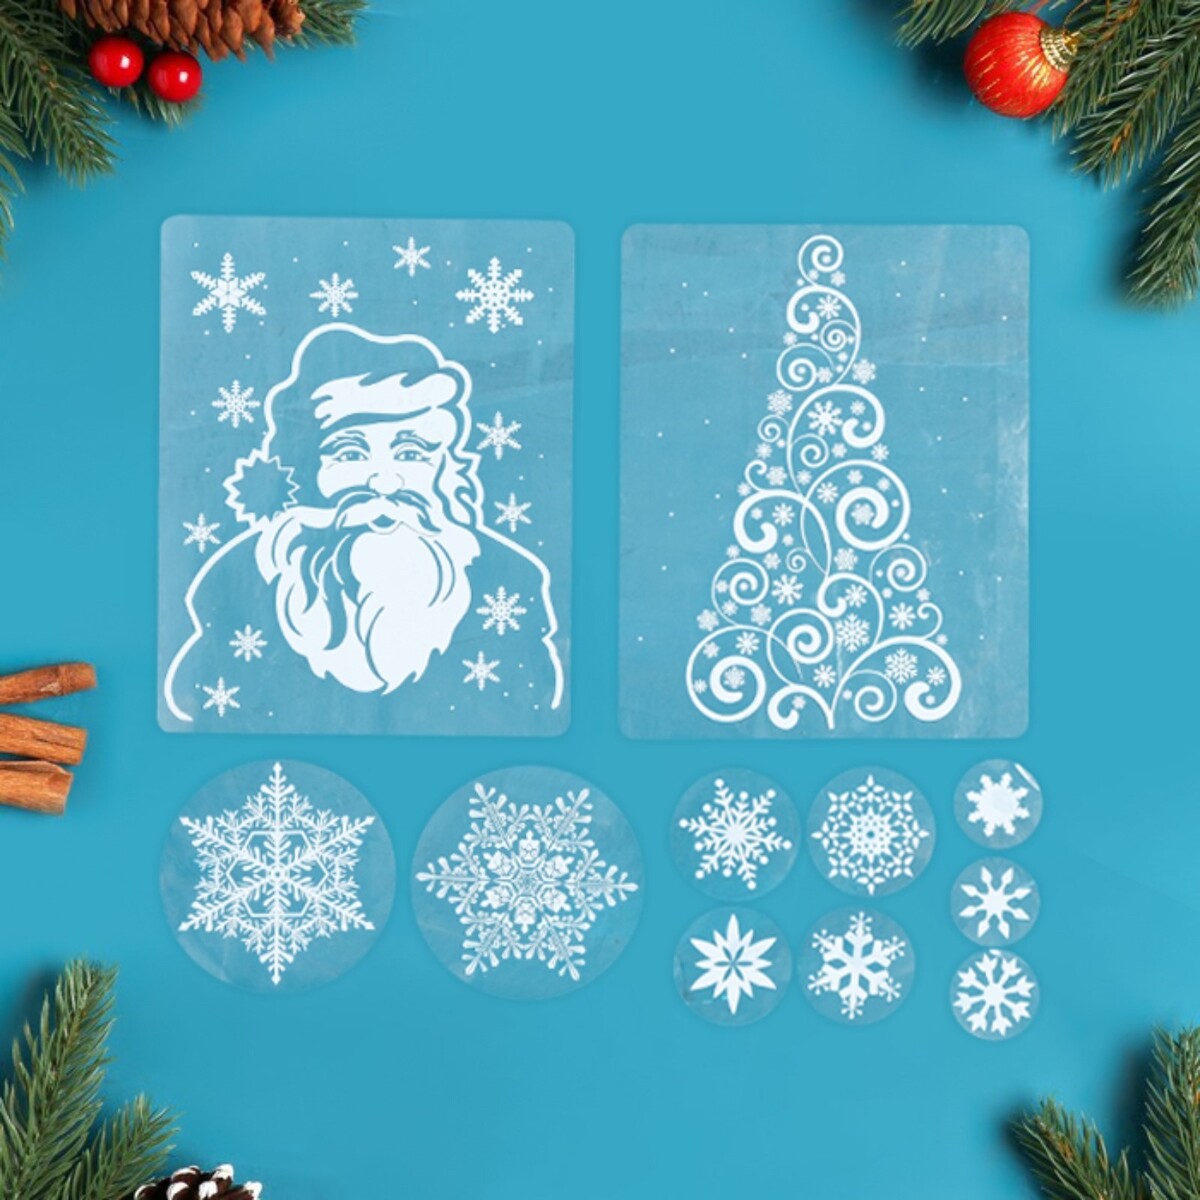 Набор наклеек новогодних коллекция новогодних наклеек веселый снеговичок и его друзья